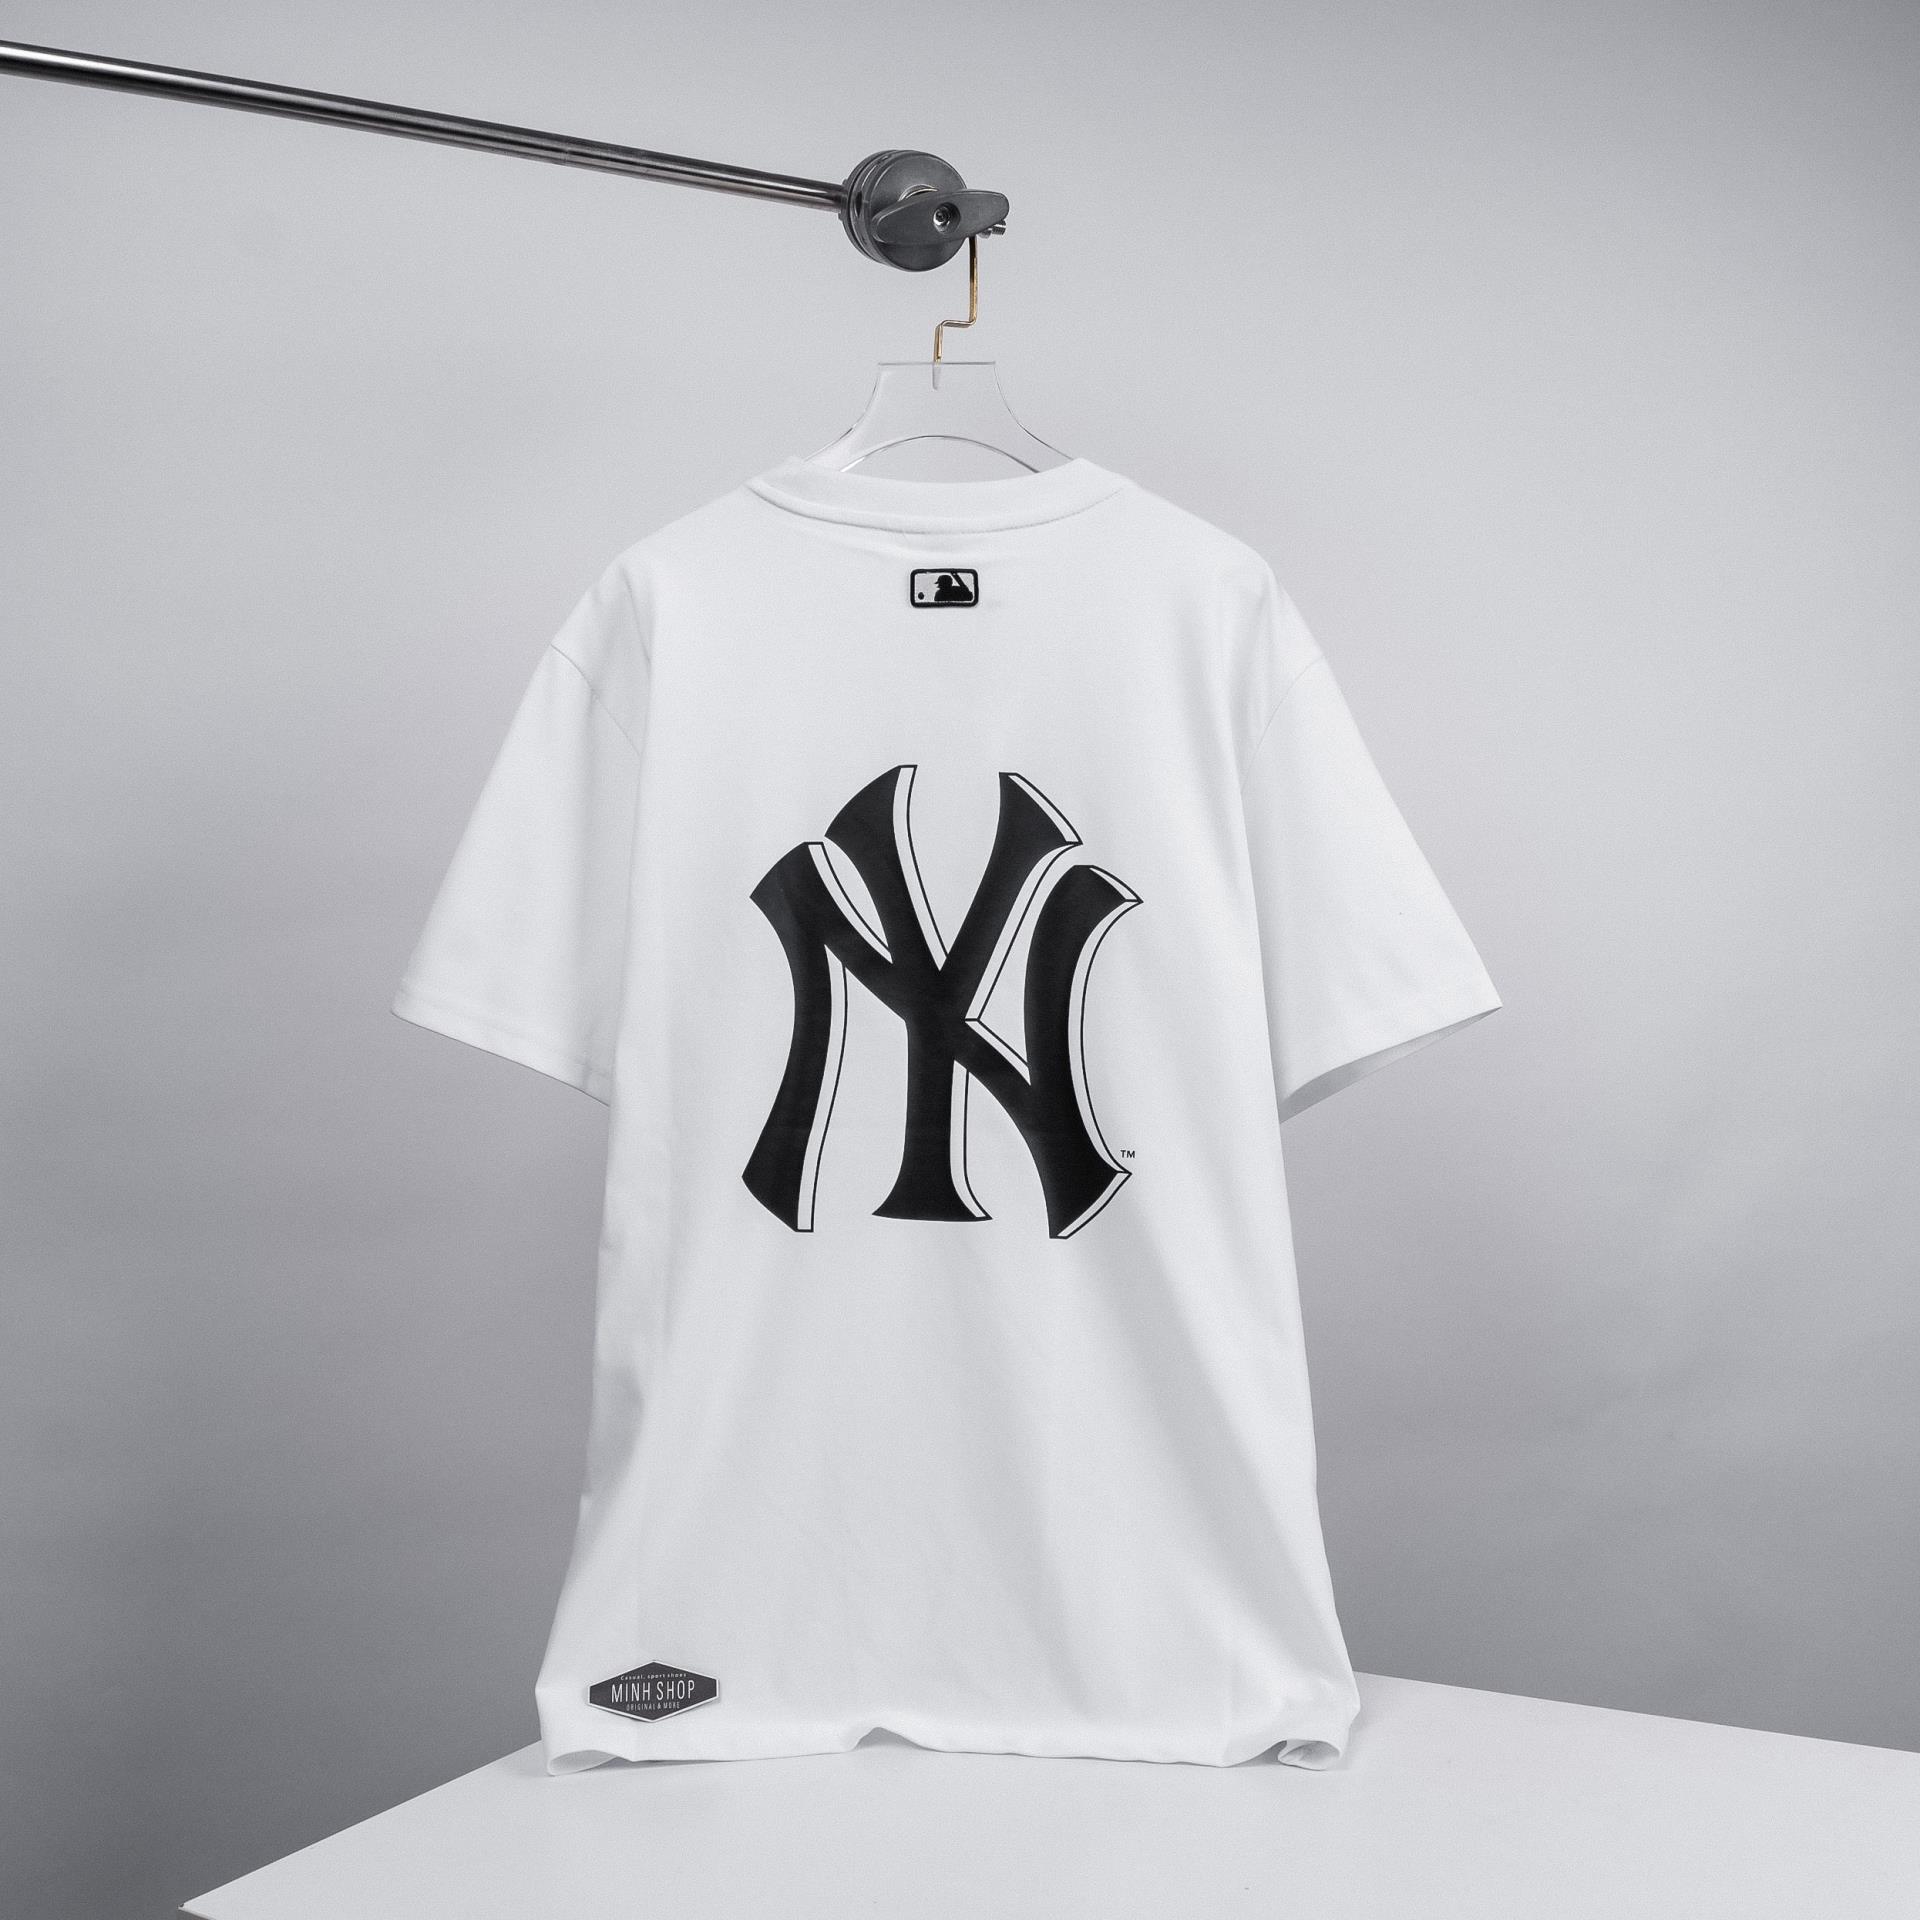 Áo Thun NY/MLB New York Cao Cấp - Màu Vàng - Cotton 4C 65% Siêu Mịn Mát  (Không đúng cotton 4c tặng free áo)